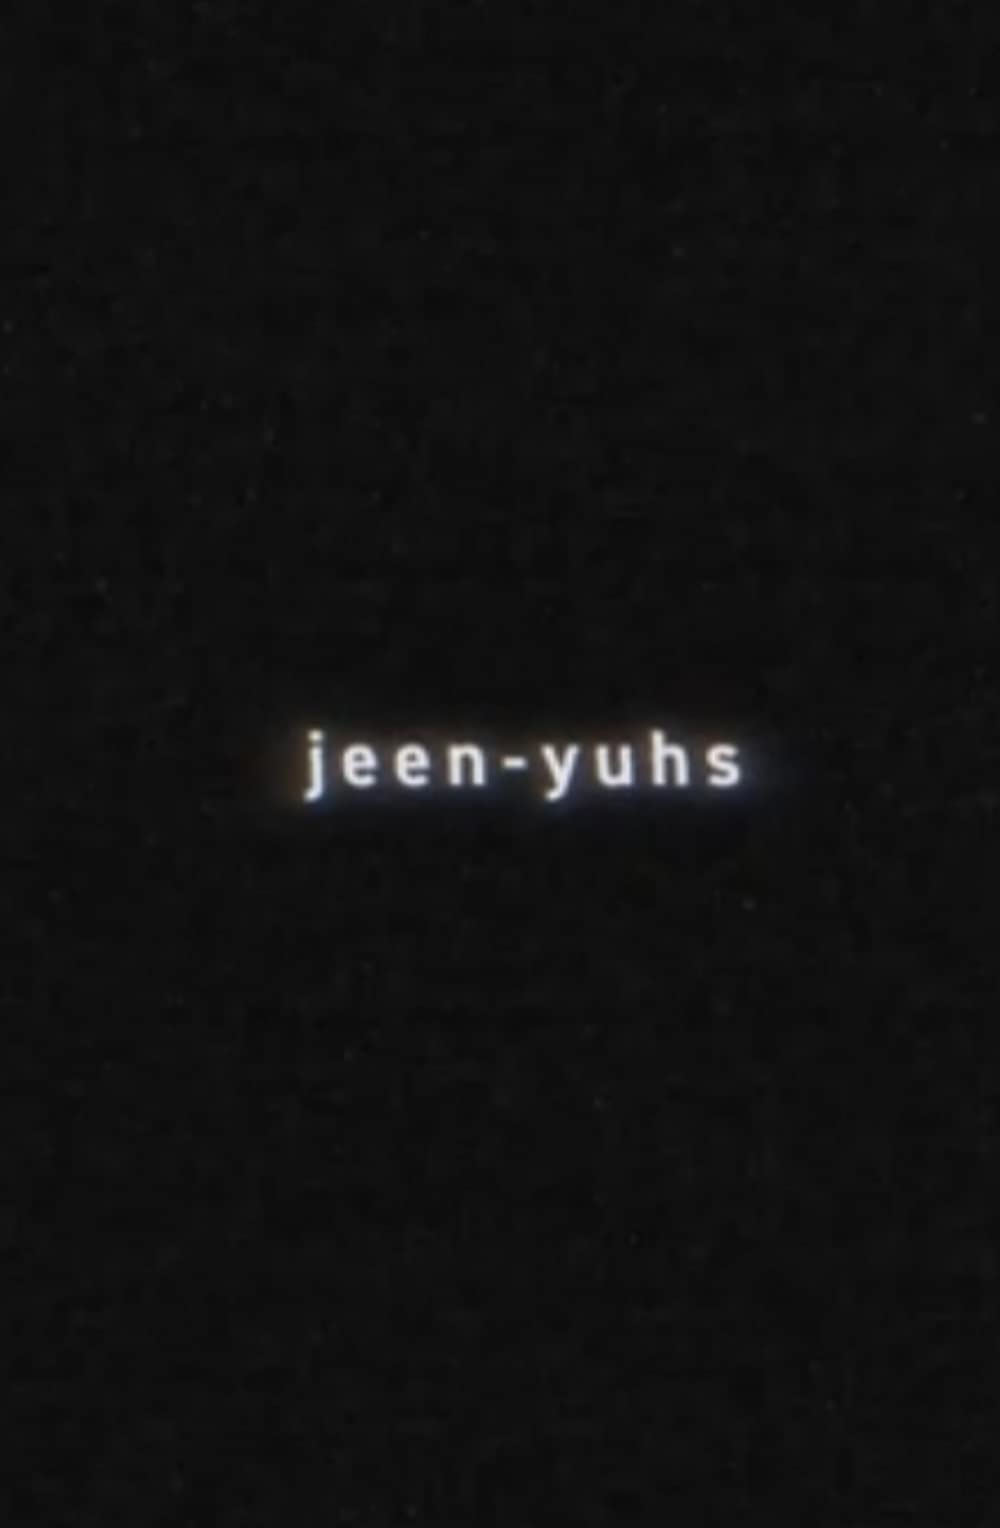 Jeen-yuhs: A Kanye Trilogy